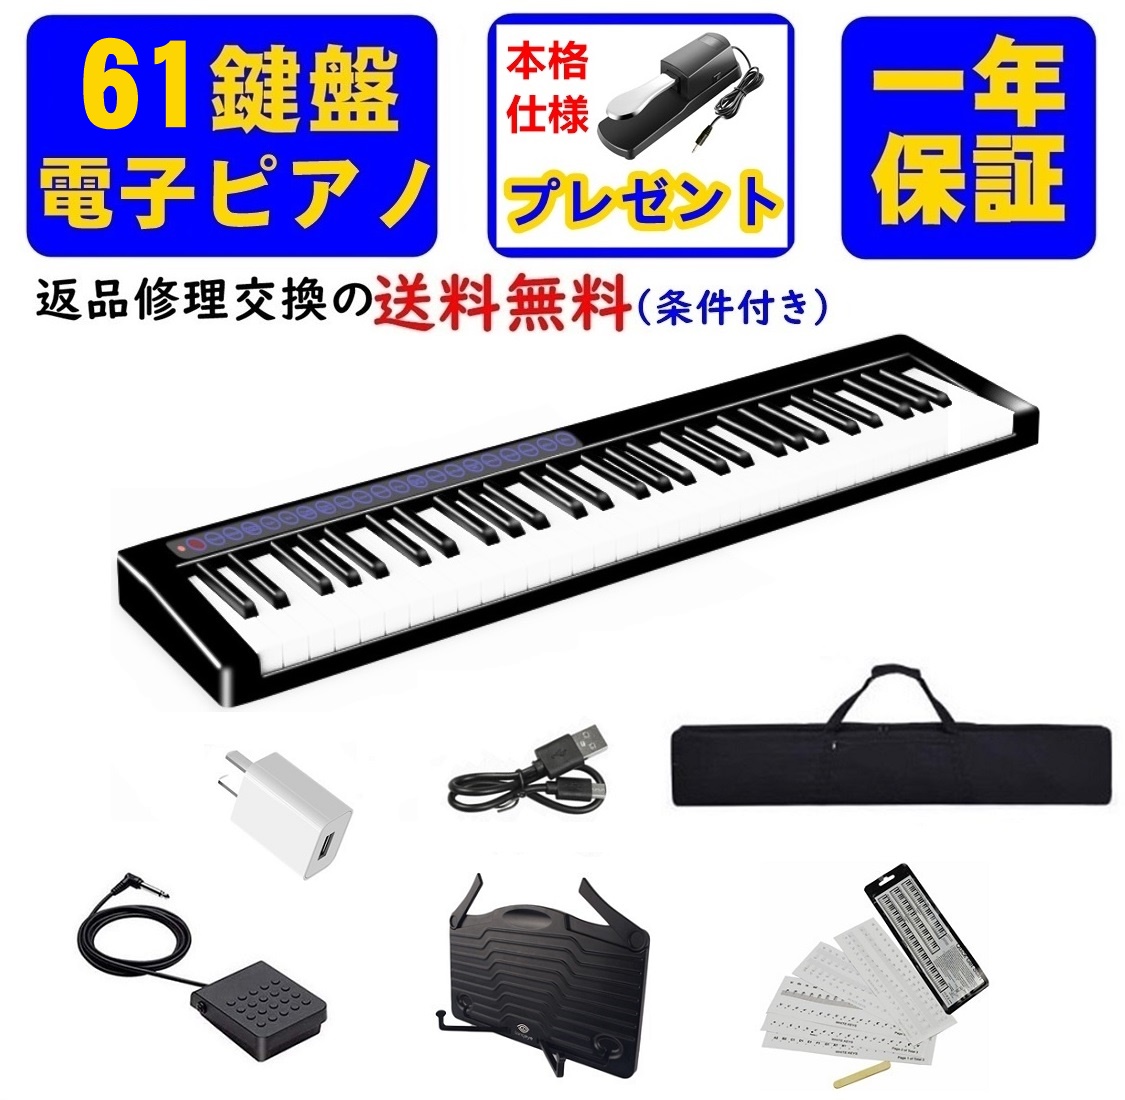 電子ピアノ 61鍵盤 Longeye MIDI対応 ピアノ キーボード 充電式 譜面台 ペダル ソフトケース 鍵盤シール コンパクト  10mmストローク 軽量 超小型 バッテリ内蔵 長時間利用可能 練習 初心者 子供 1年保証 （黒） | 良品生活館